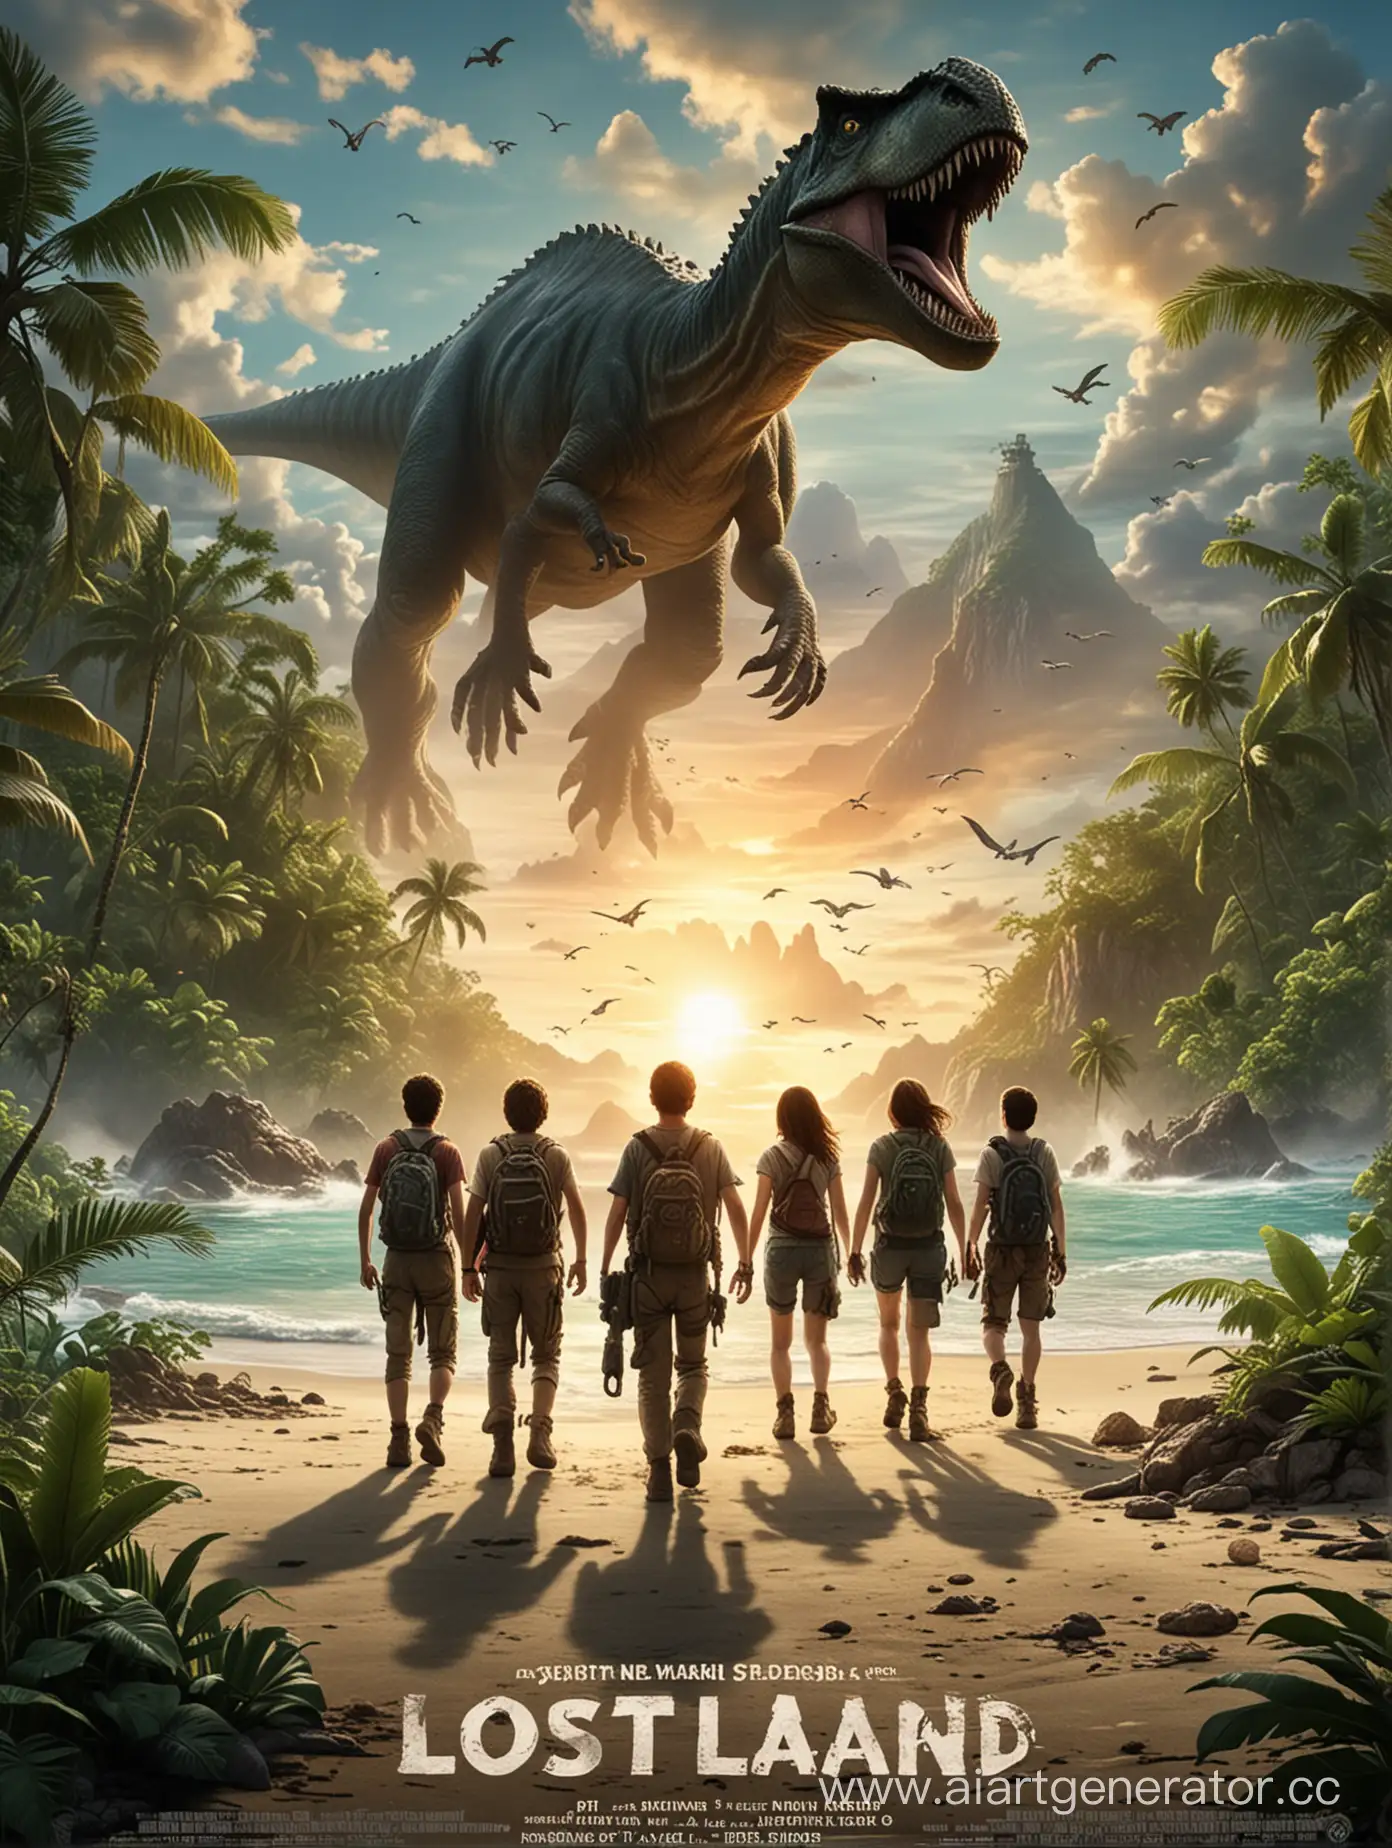 фильм про то что группа подросков попадает на остров с динозаврами и пытаются там выжить. название "Затерянный остров"